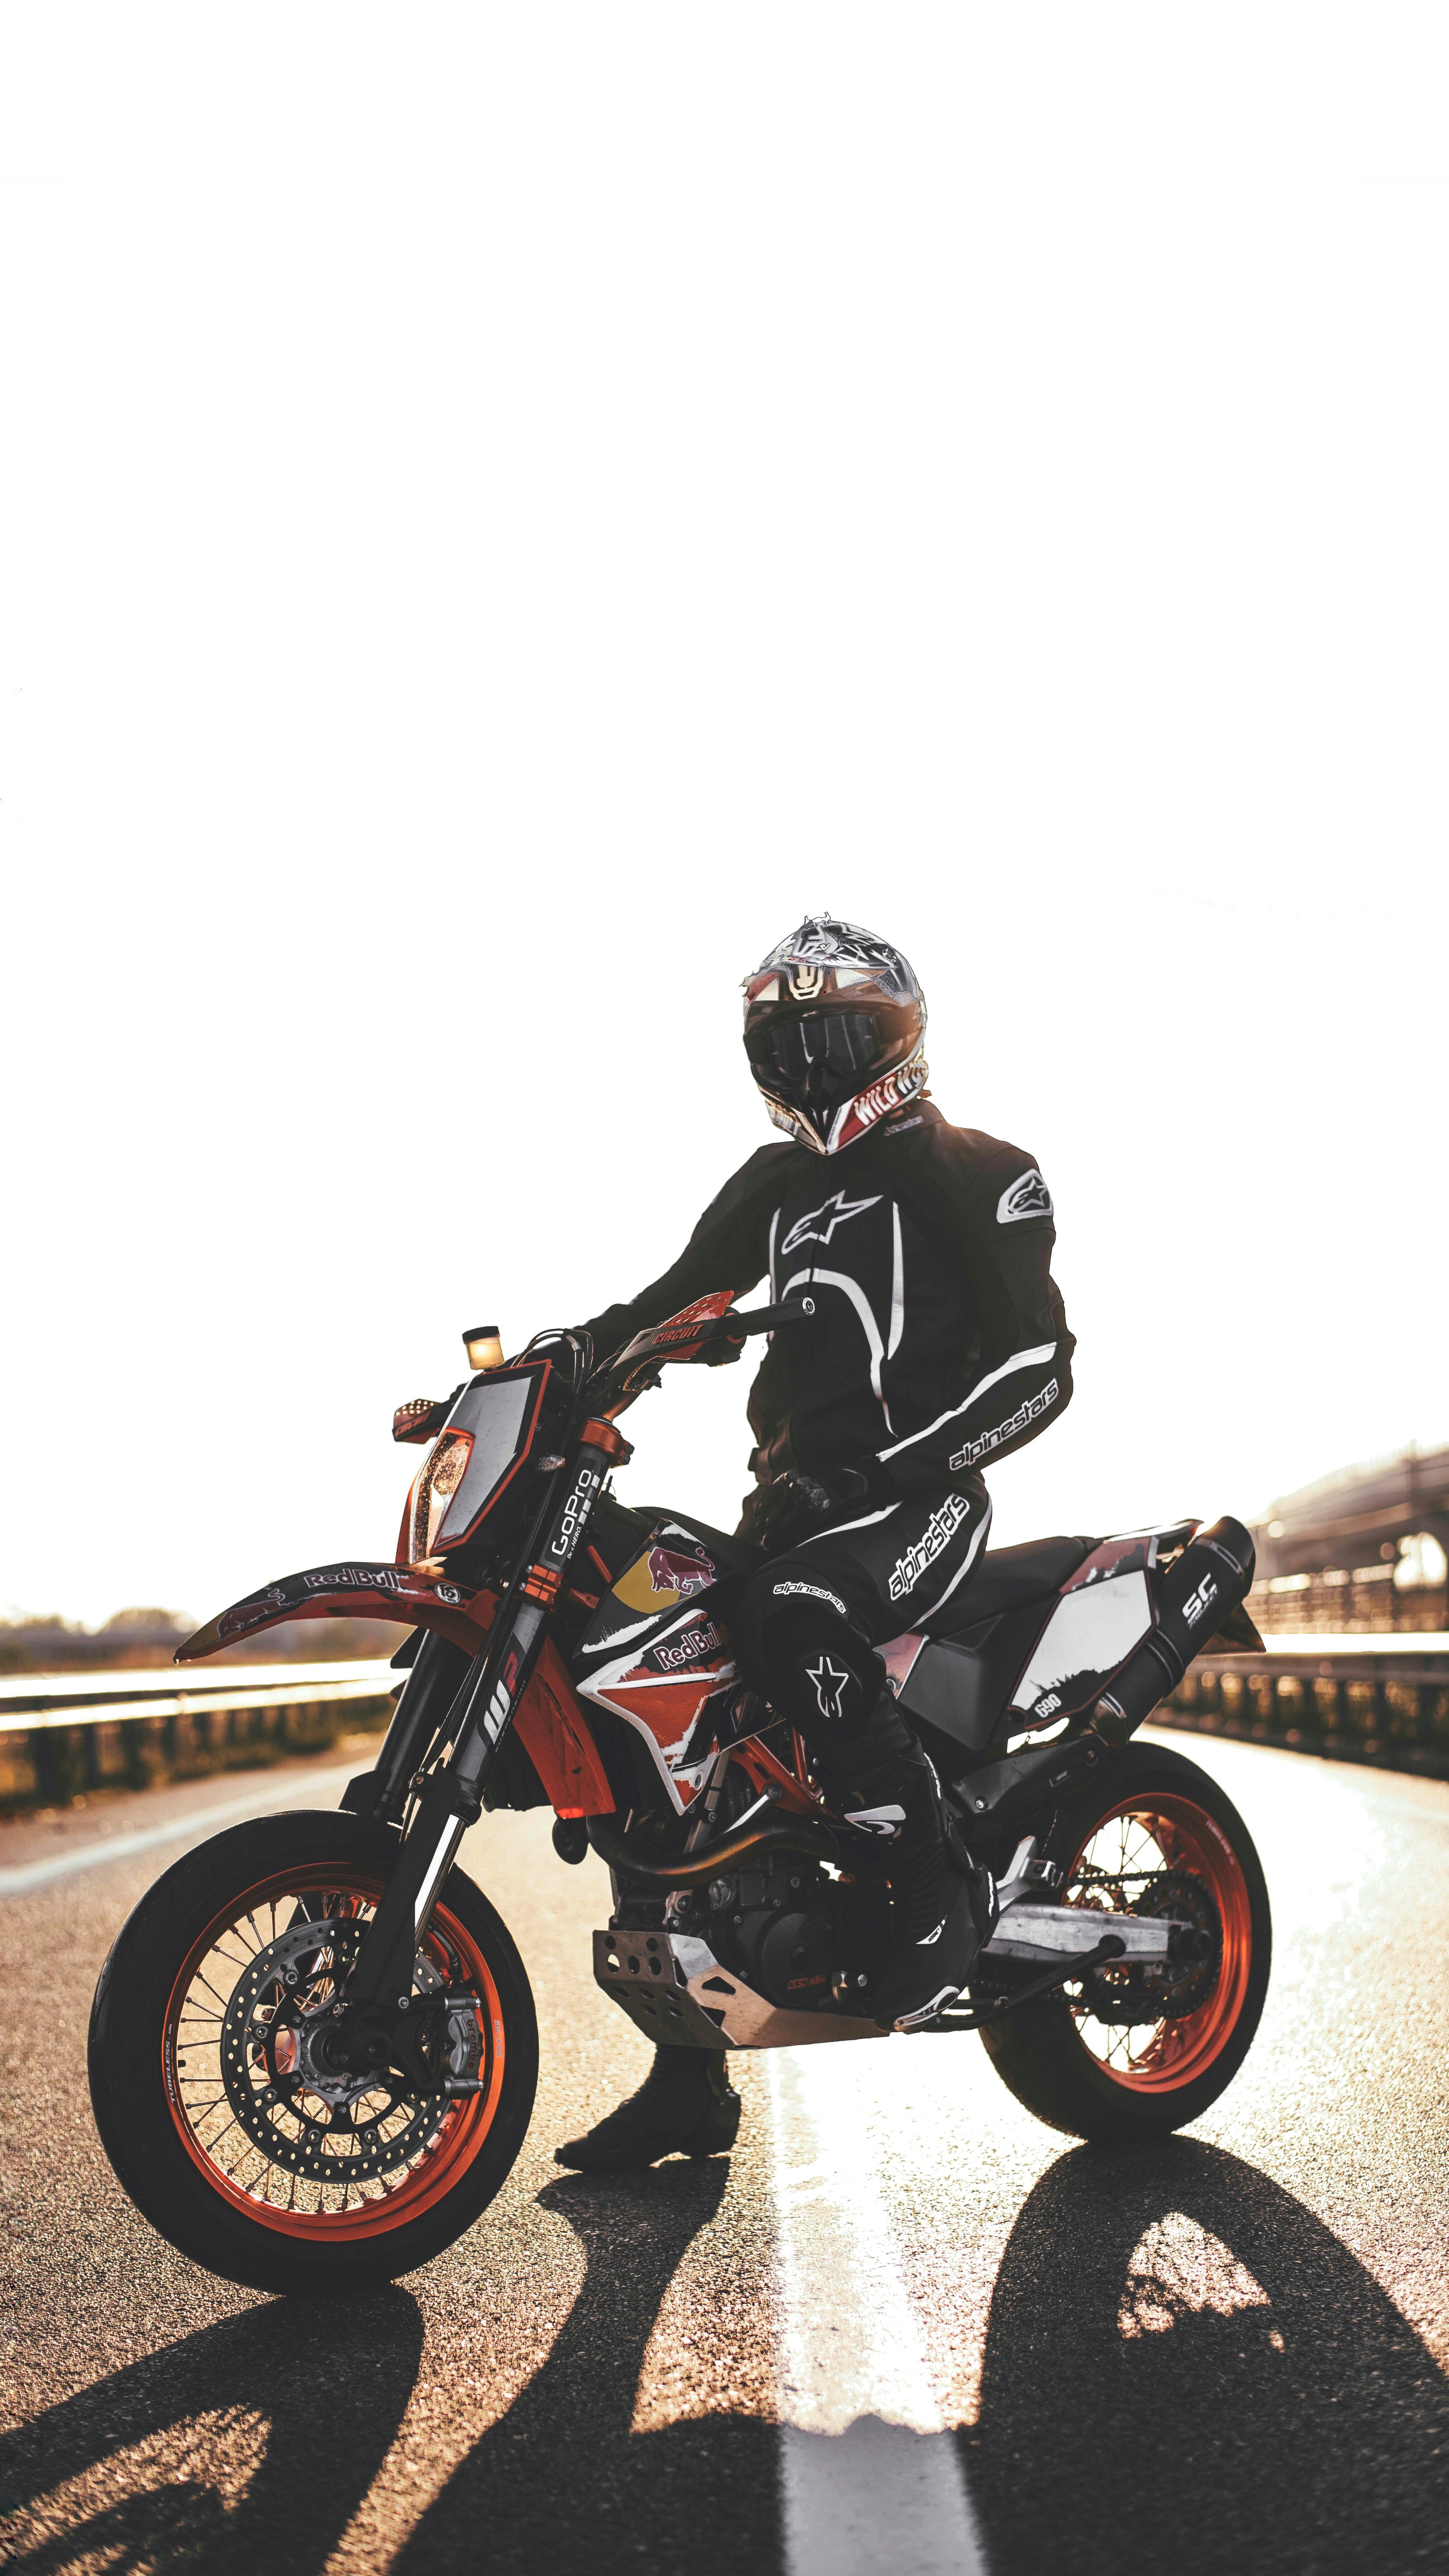 128253 fond d'écran 1080x1920 sur votre téléphone gratuitement, téléchargez des images motocycliste, moto, casque, motocyclette 1080x1920 sur votre mobile